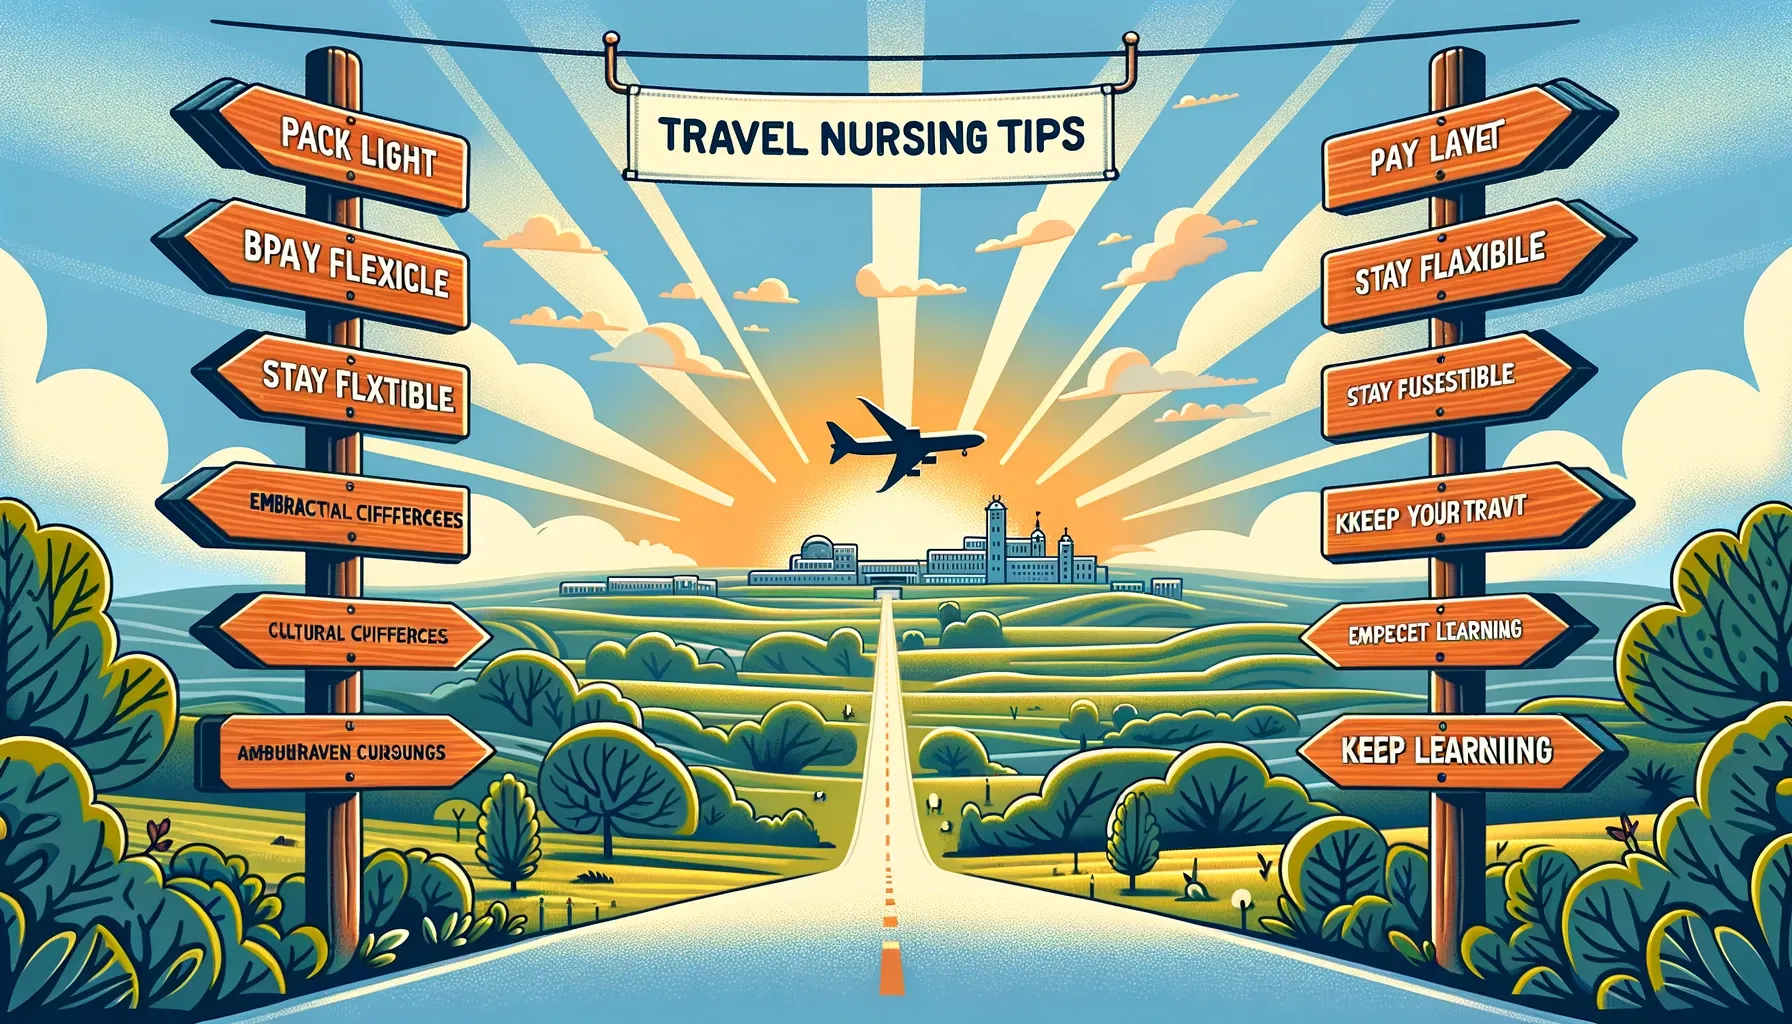 Travel Nursing Tips: A Thorough Handbook